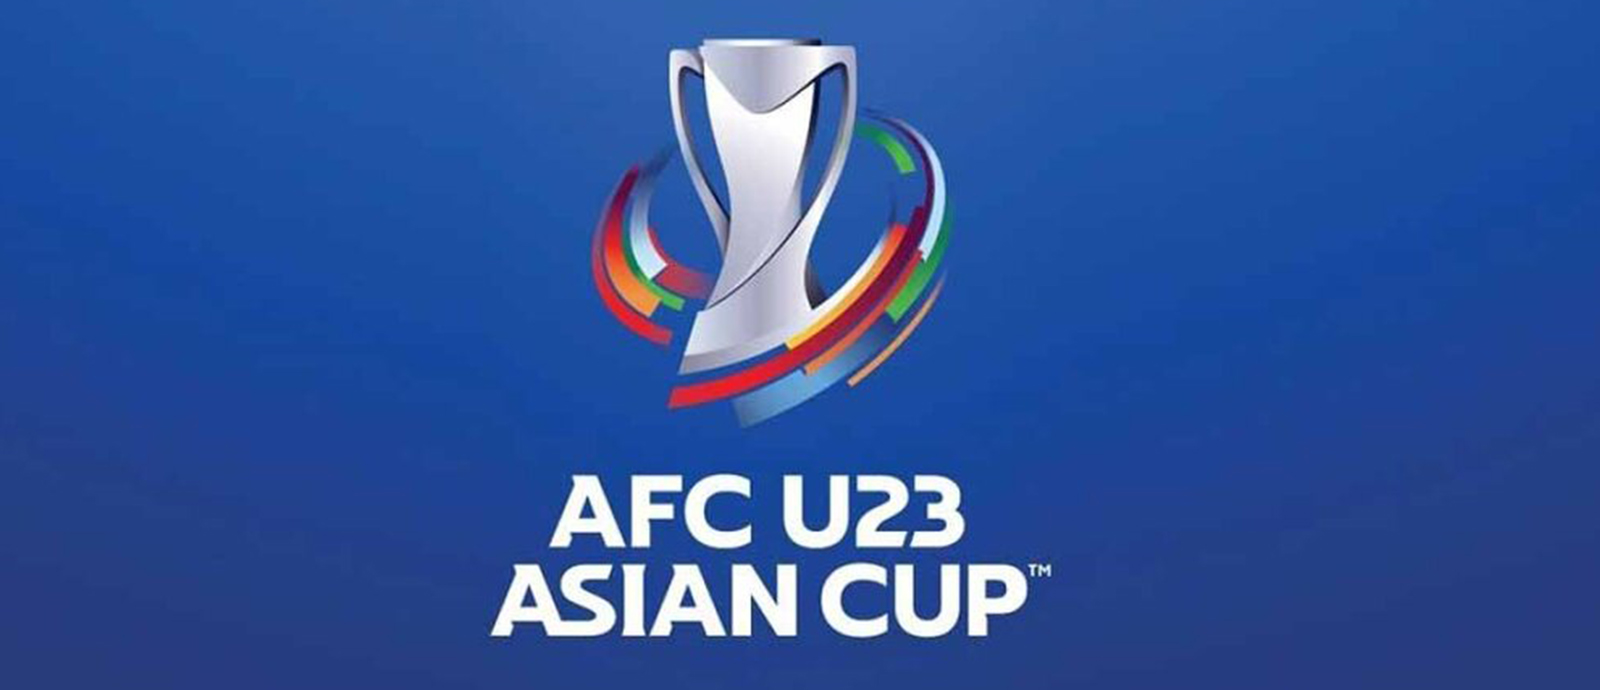 نهائيات كأس آسيا لكرة القدم تحت 23 عاما